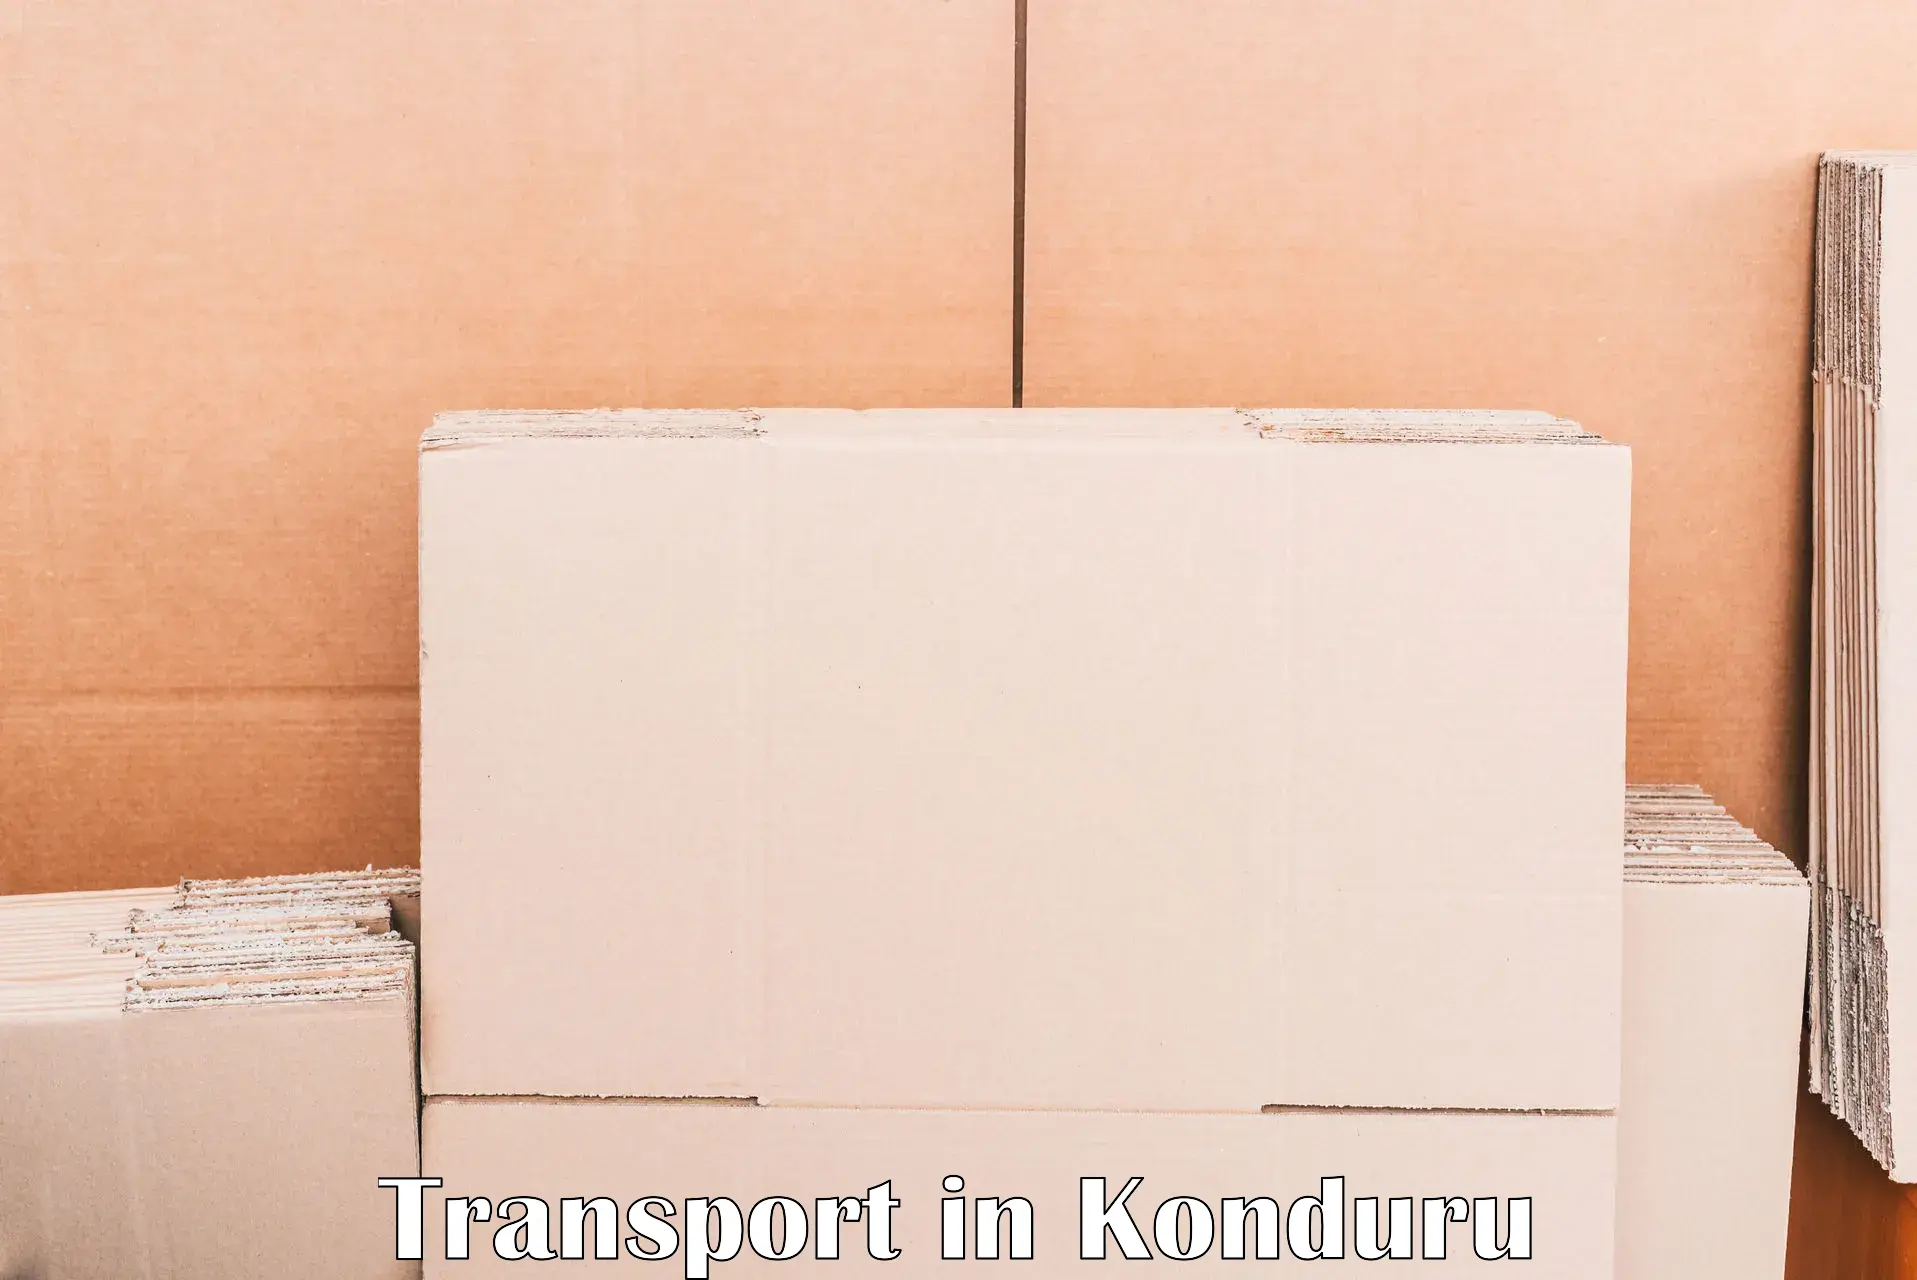 Logistics transportation services in Konduru